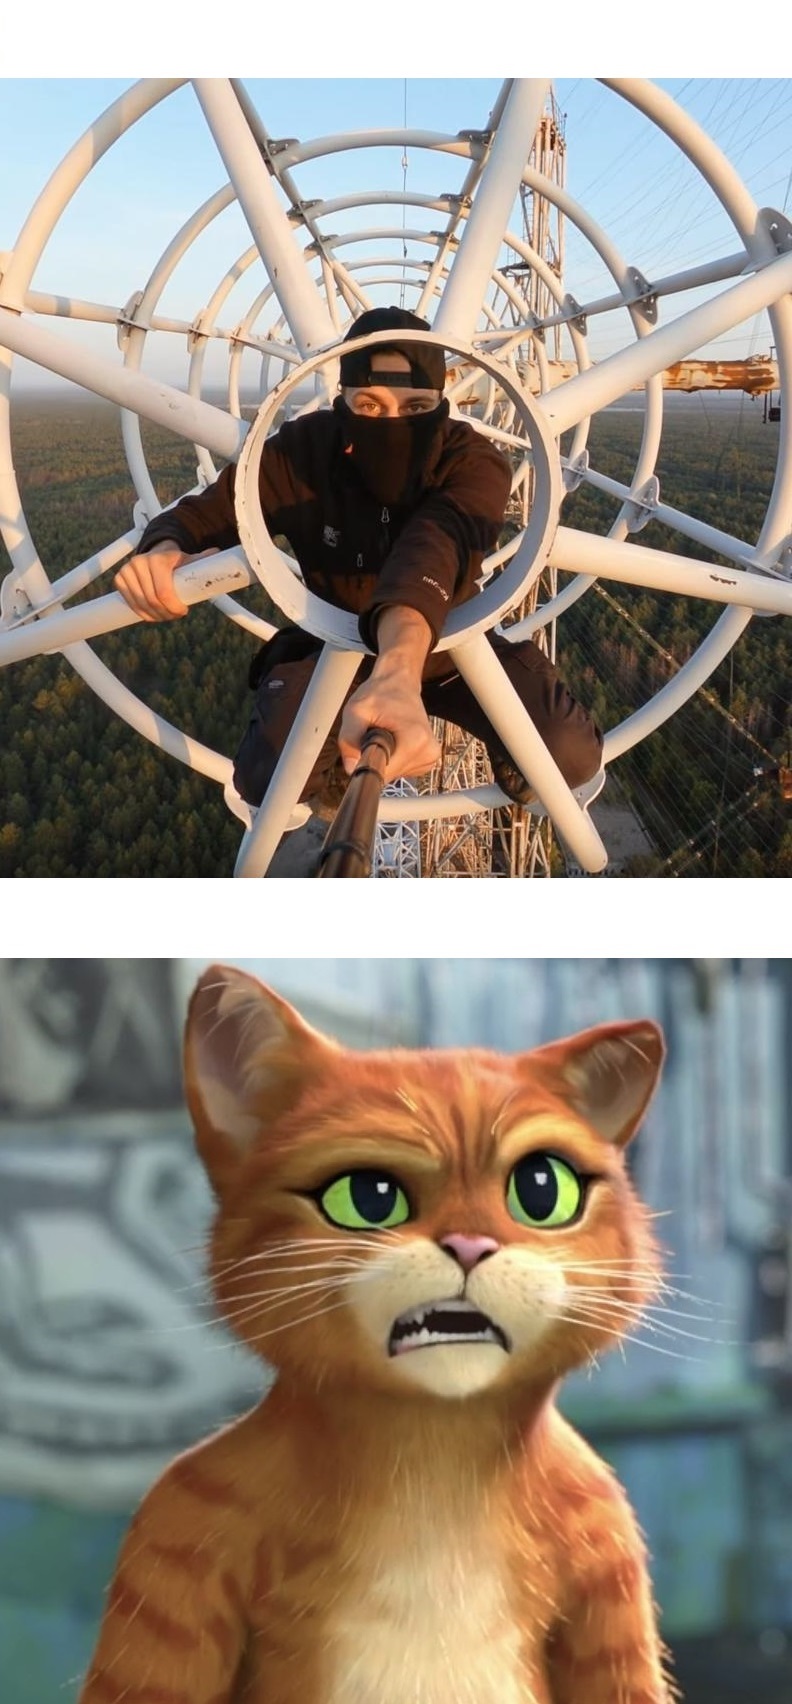 Shrek Cat Meme Generator - Imgflip